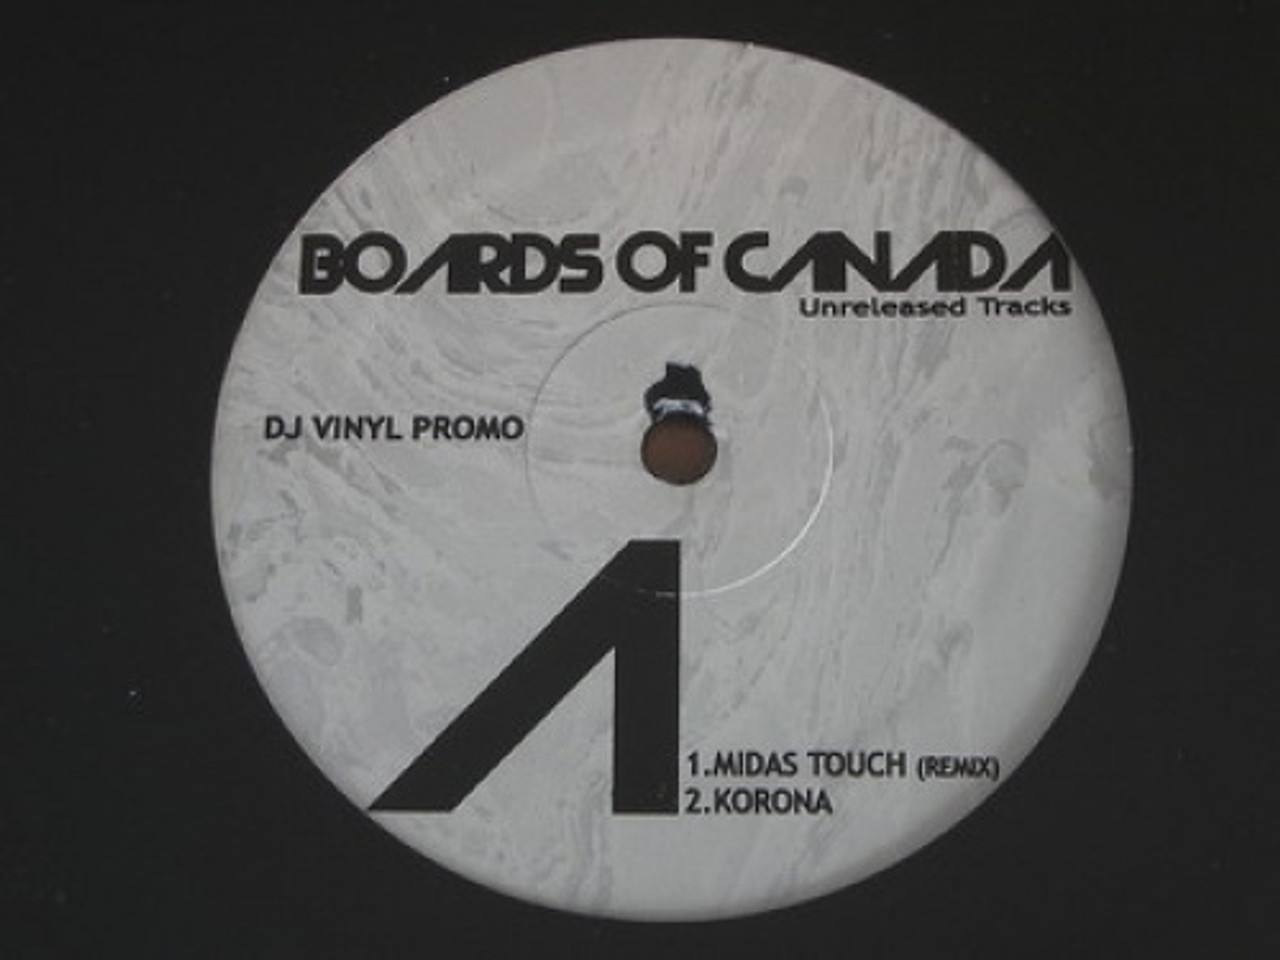 frugter dans eftertænksom Boards Of Canada - Unreleased Tracks - 12" Vinyl - Ear Candy Music